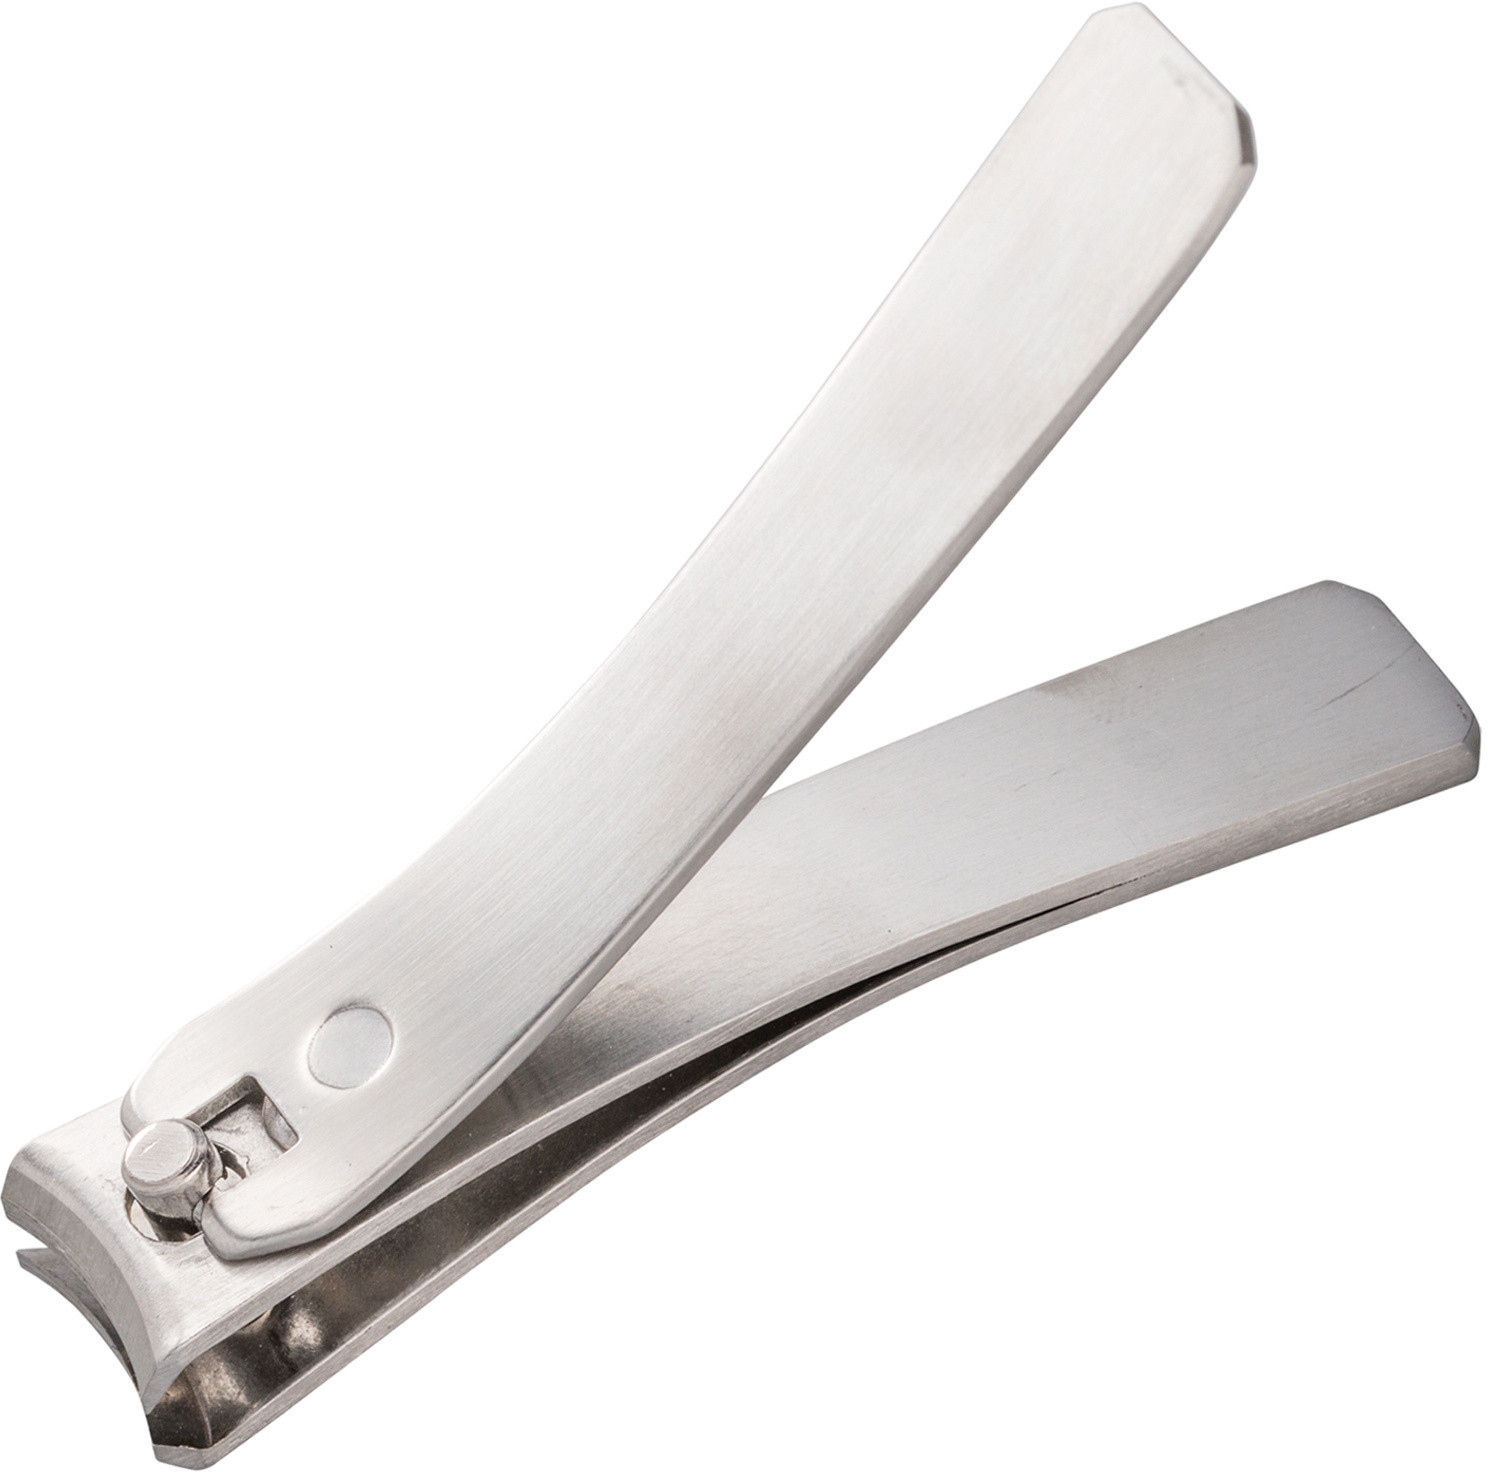 Pfeilring Nagelknipser Inox 8,5 cm ab 14,42 € | Preisvergleich bei